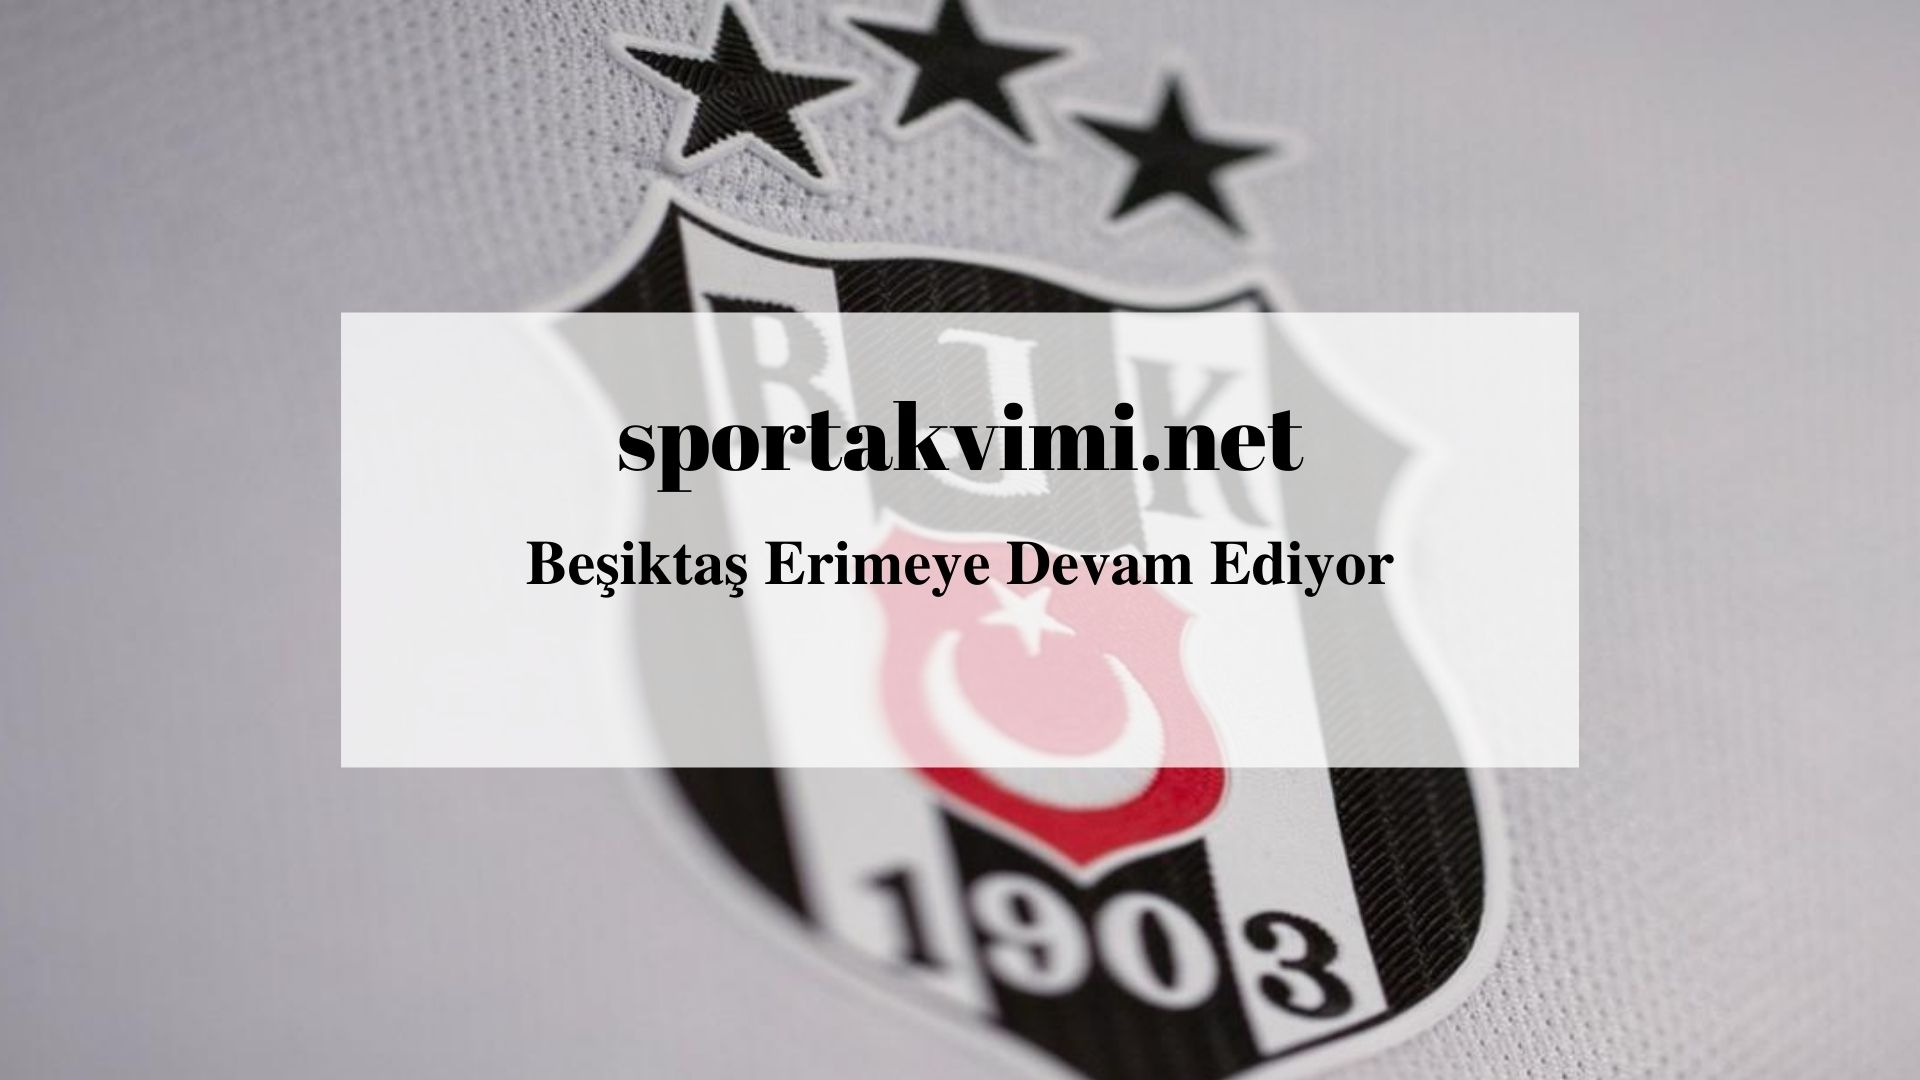 Beşiktaş Erimeye Devam Ediyor